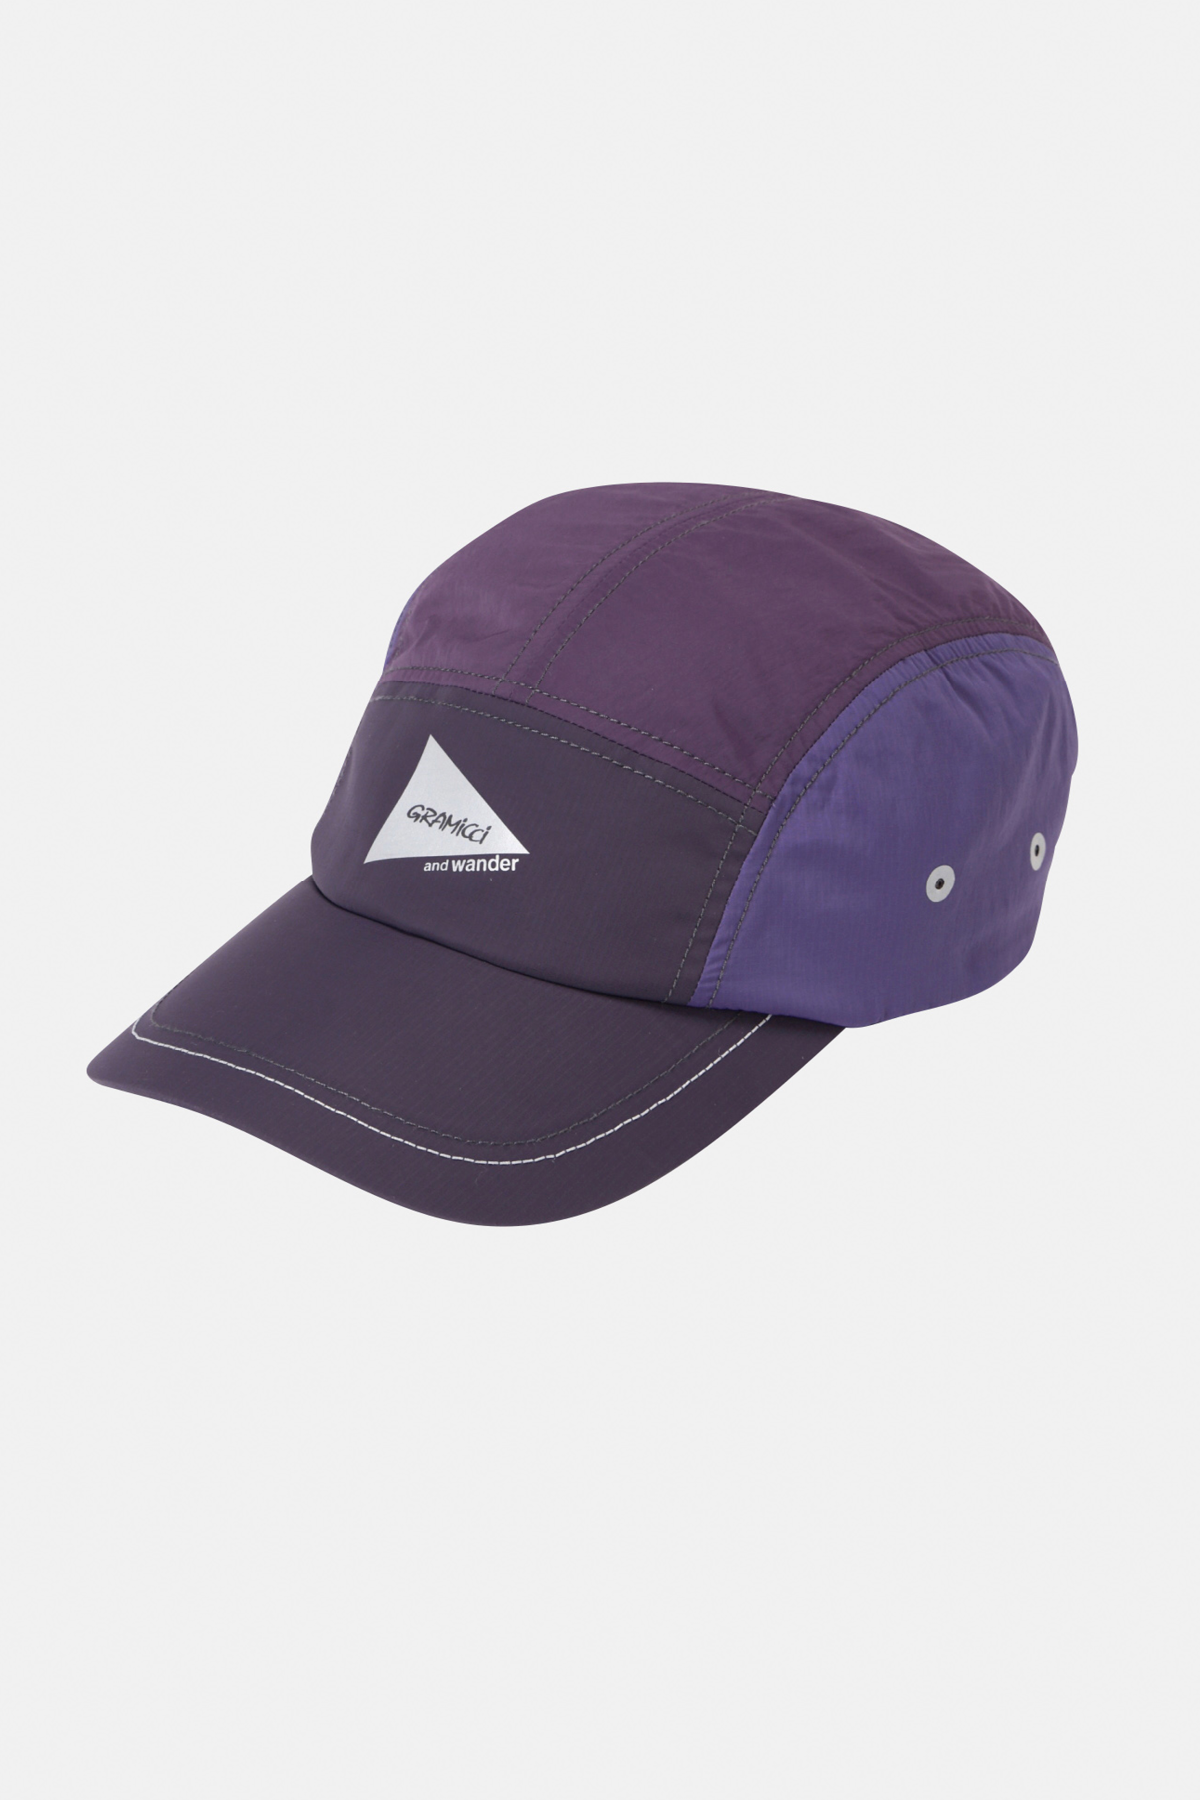 GRAMICCI x and wander Patchwork Wind Cap - Purple